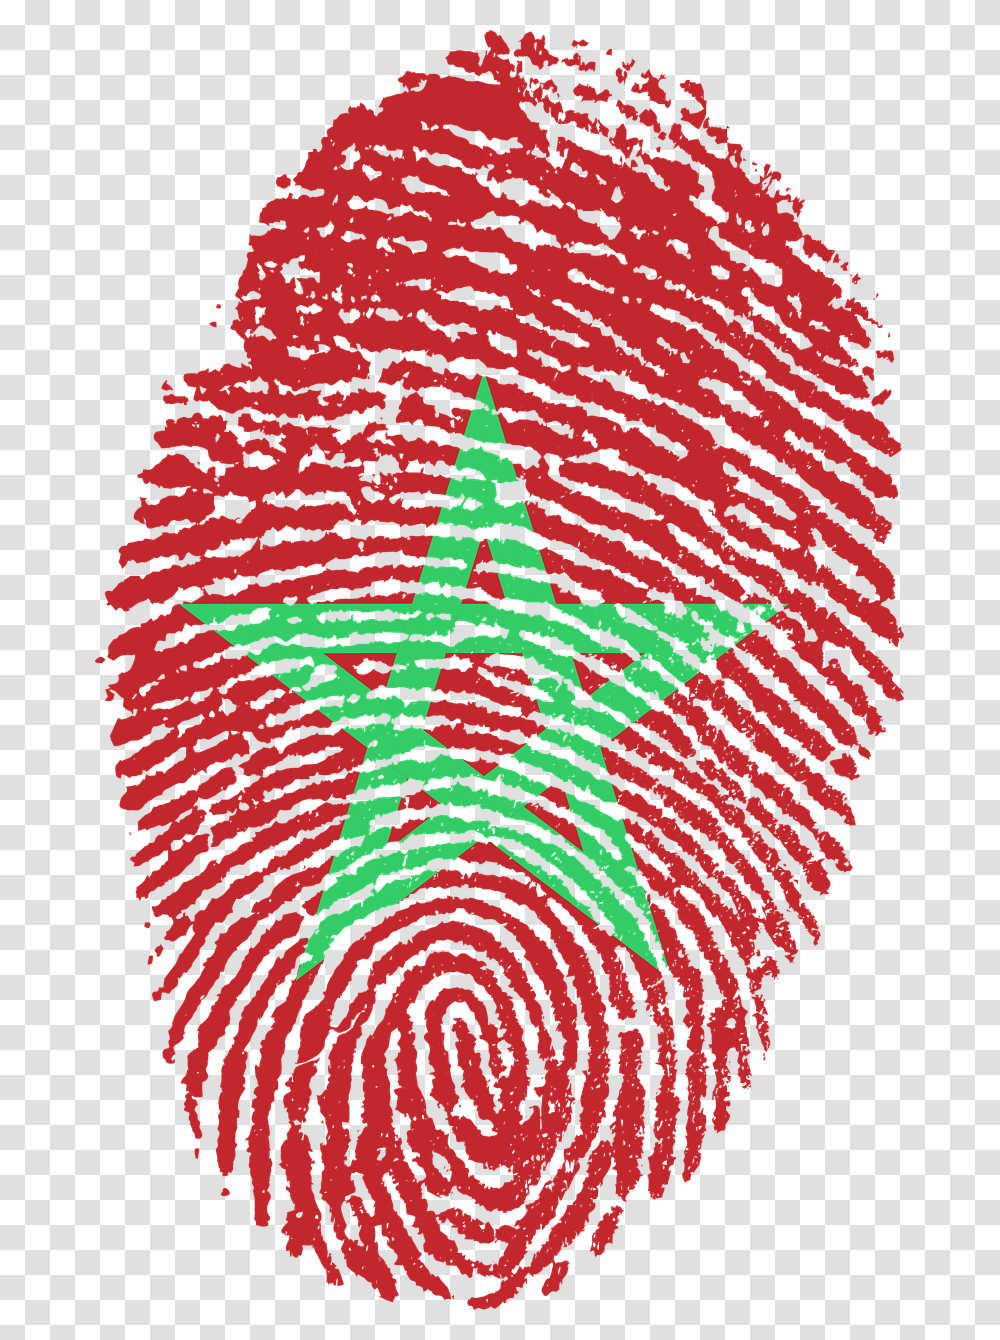 Morocco Flag Fingerprint, Rug, Pattern, Ornament Transparent Png